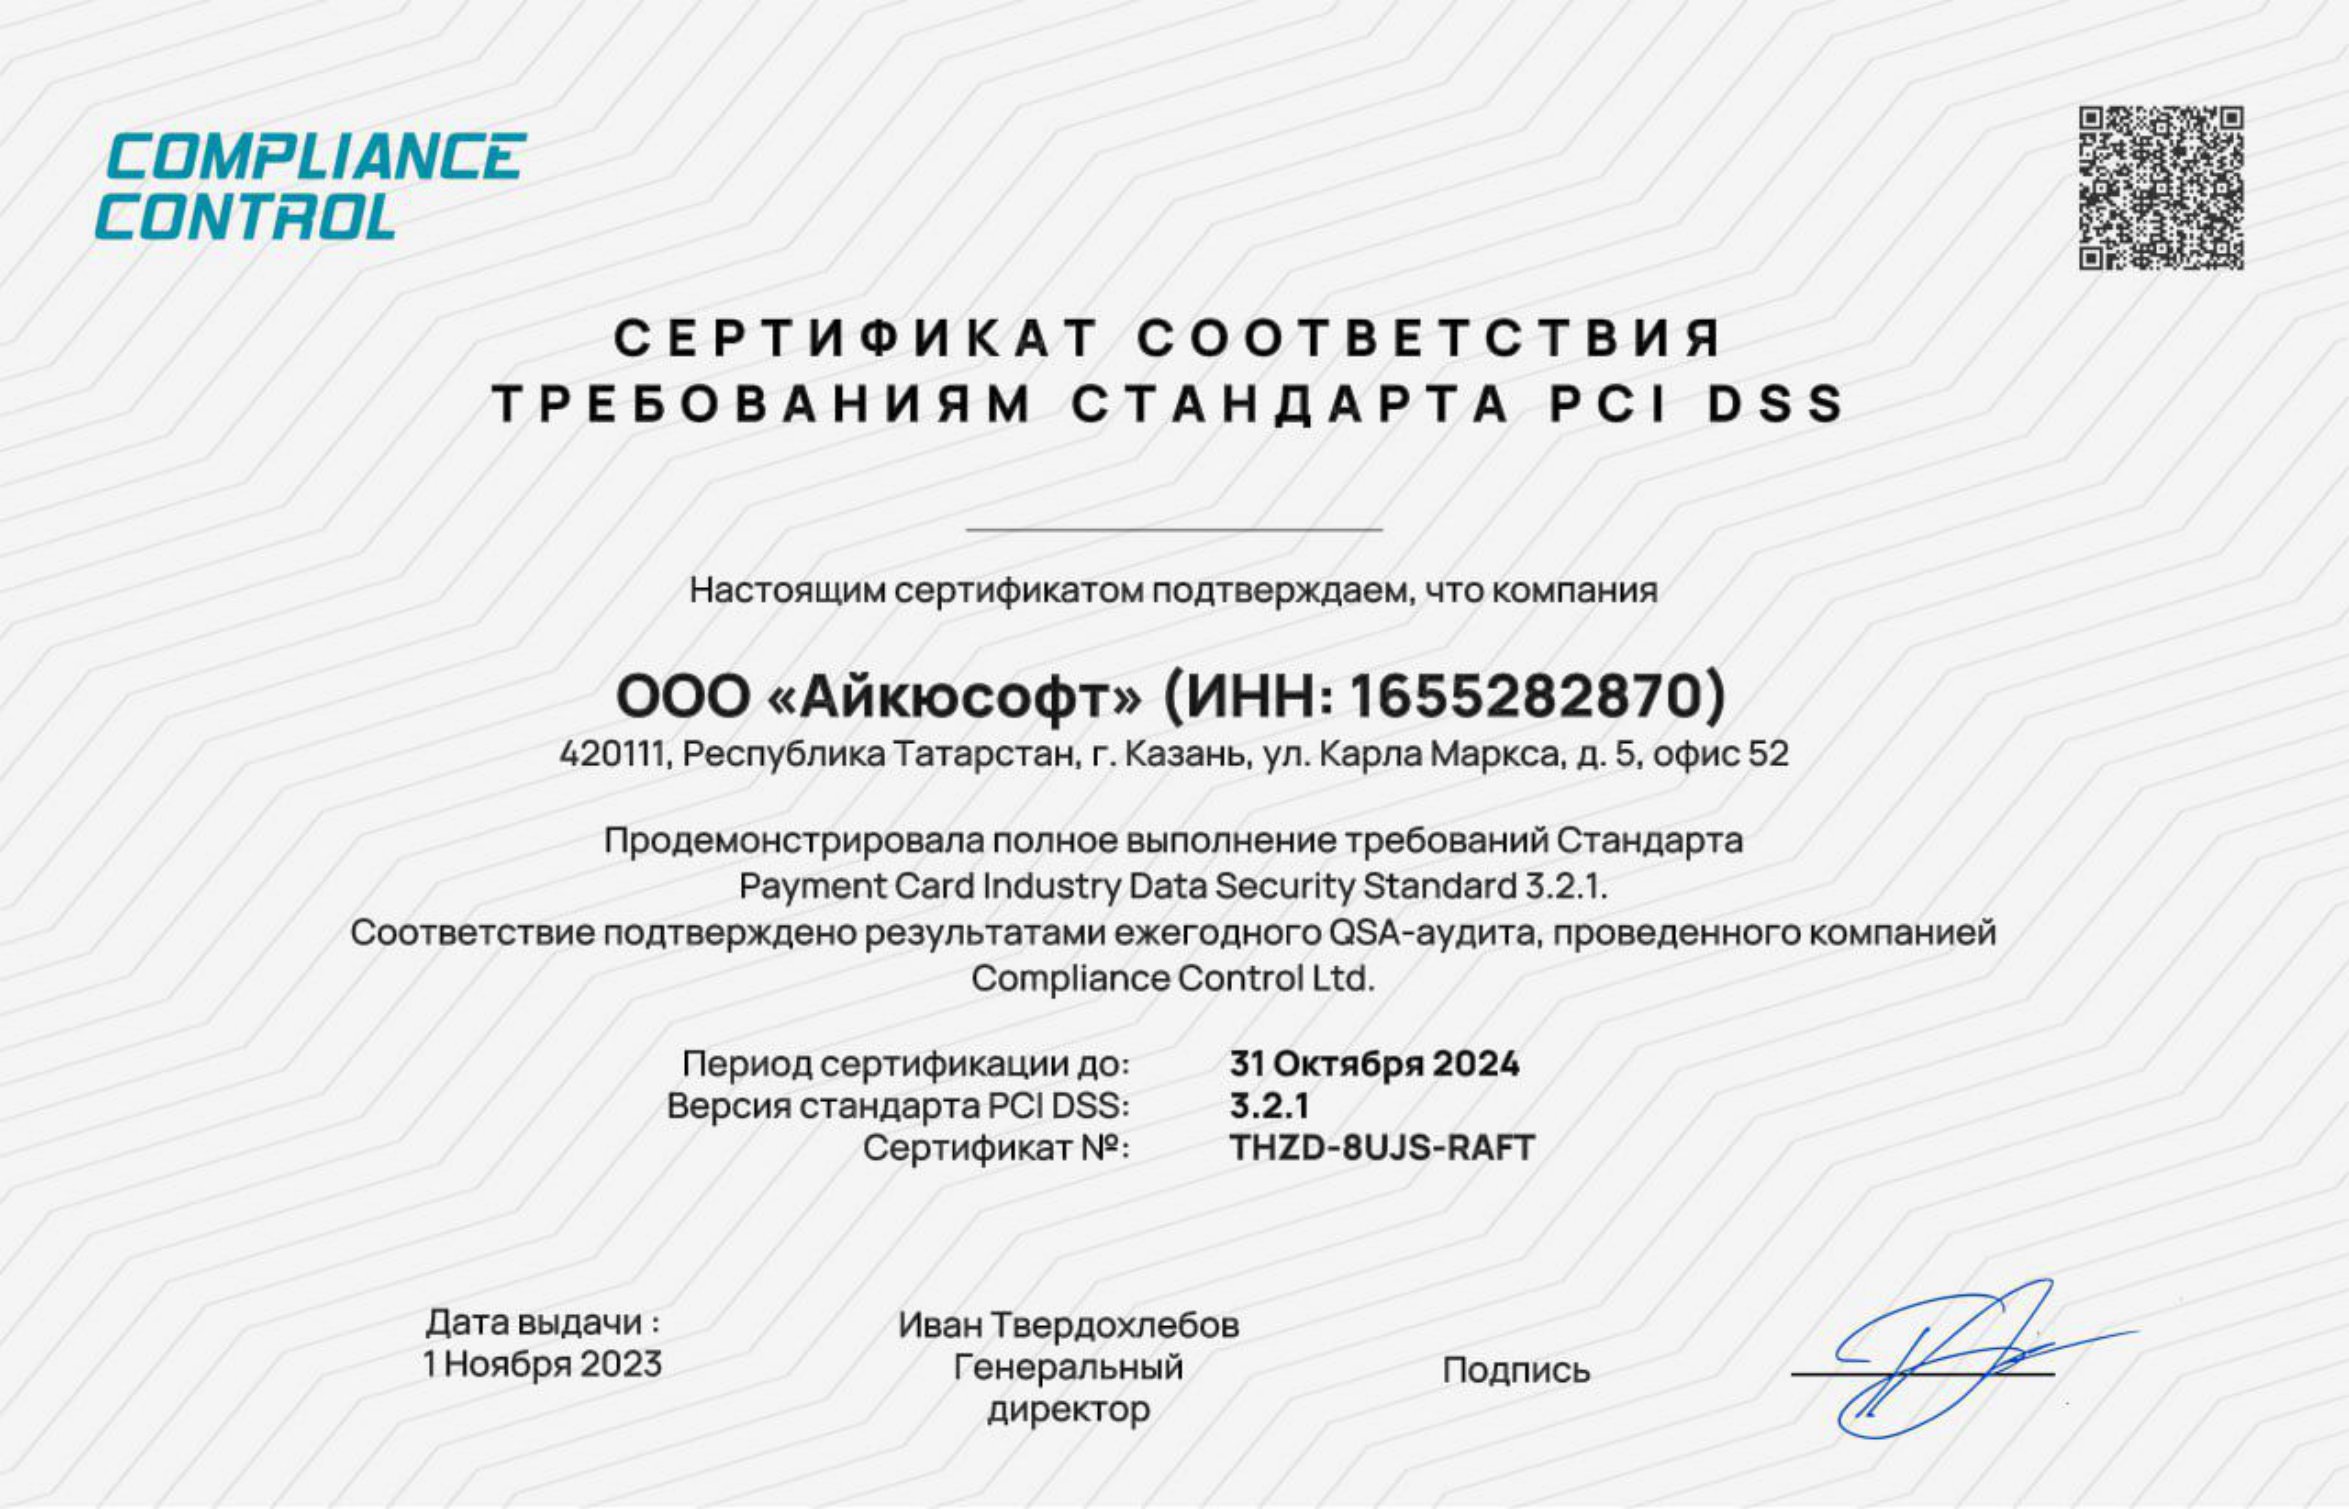 Сертификат соответствия требованиям стандарта PCI DSS